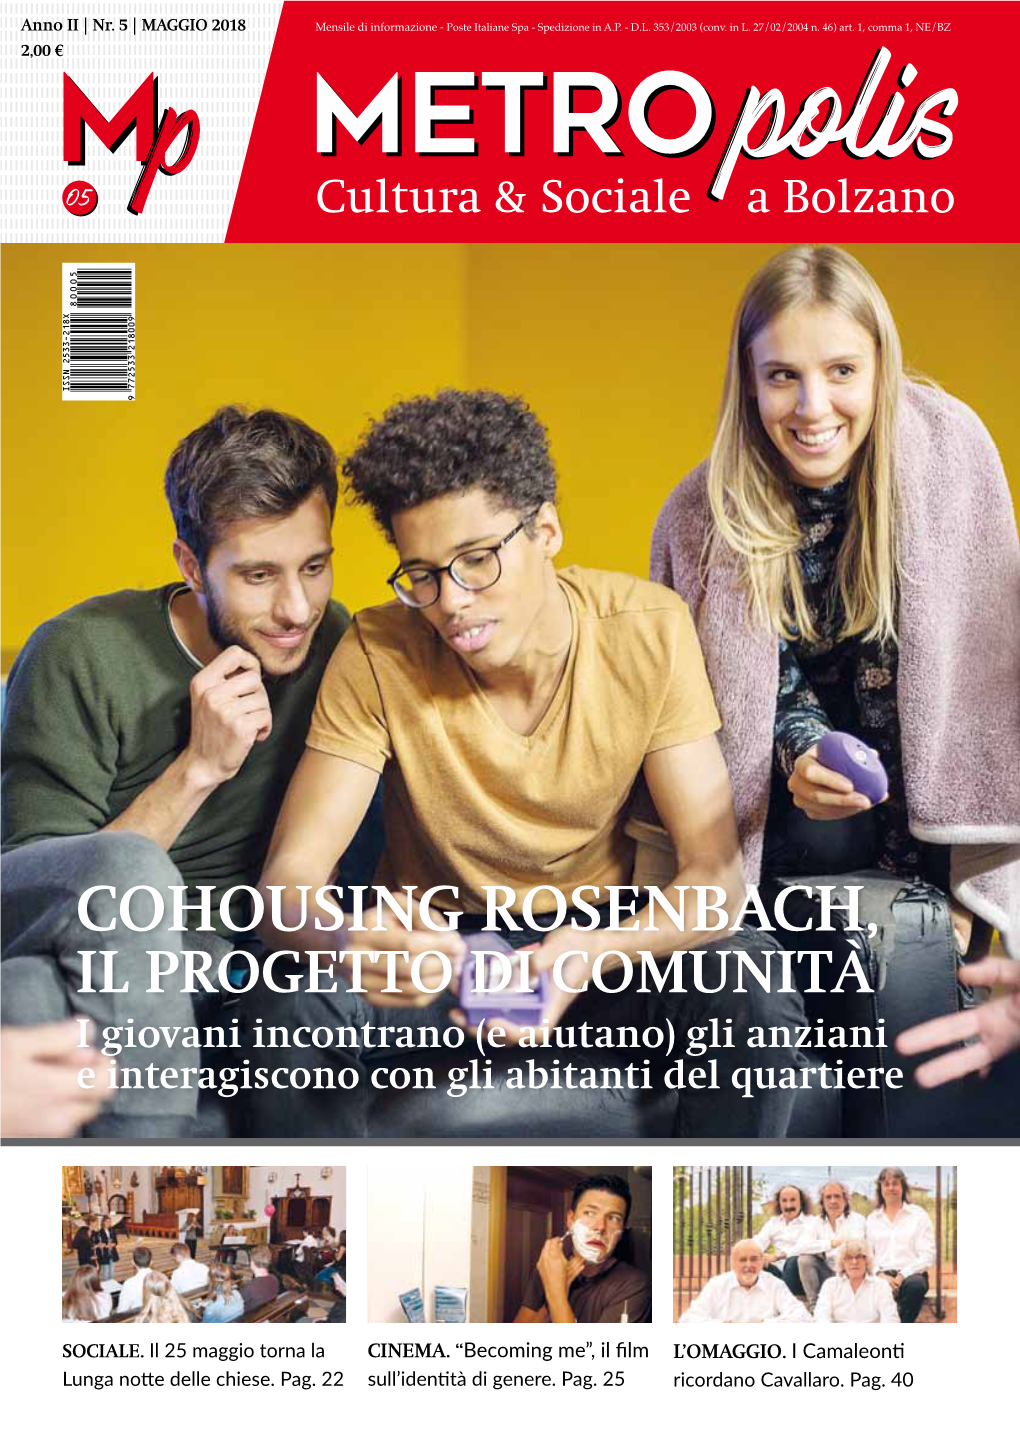 Cohousing Rosenbach, Il Progetto Di Comunità I Giovani Incontrano (E Aiutano) Gli Anziani E Interagiscono Con Gli Abitanti Del Quartiere